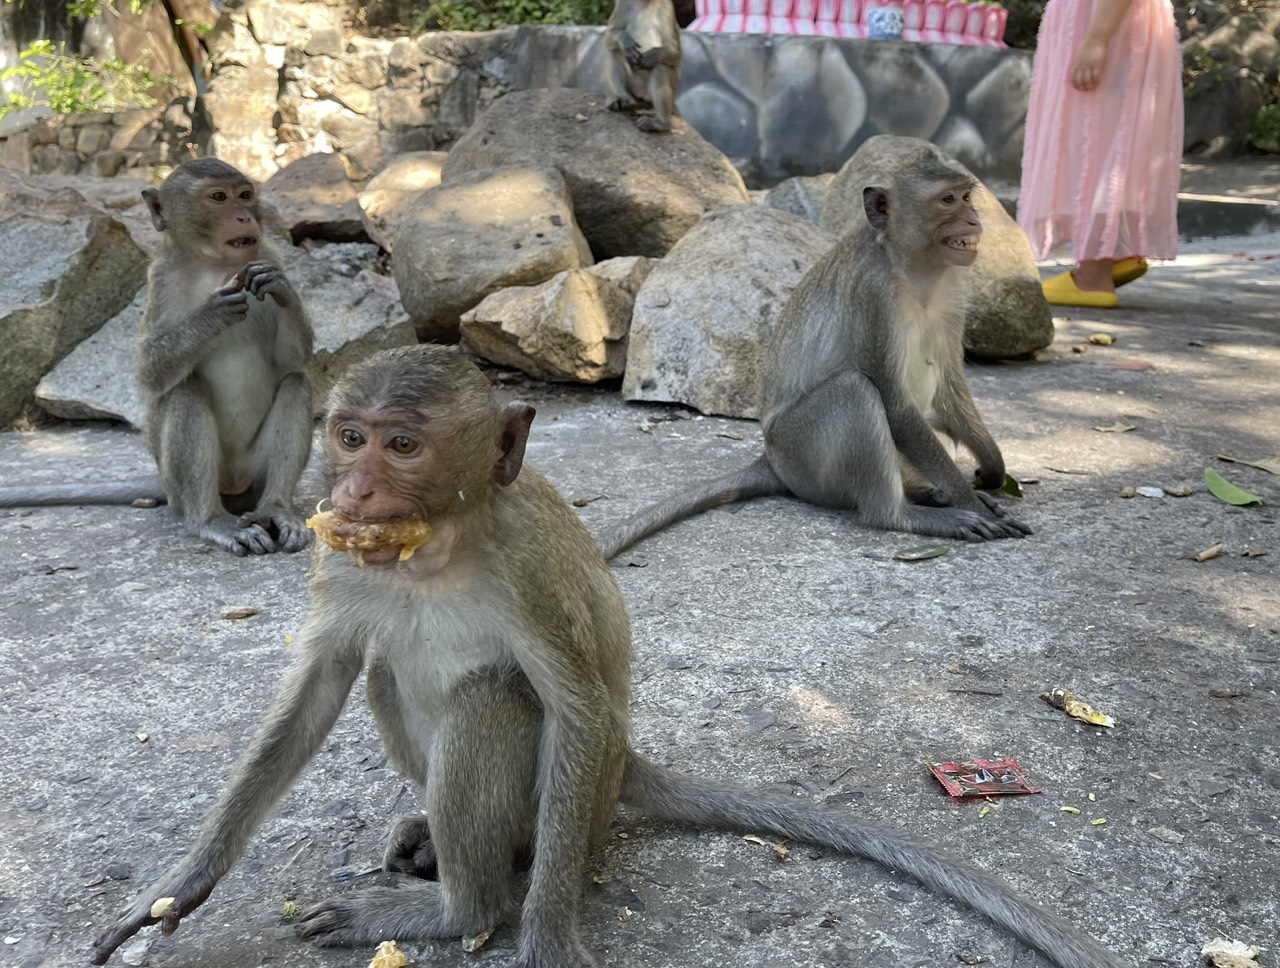 Câu chuyện về đàn khỉ nương náu cửa chùa ở Vũng Tàu - Báo Người ...